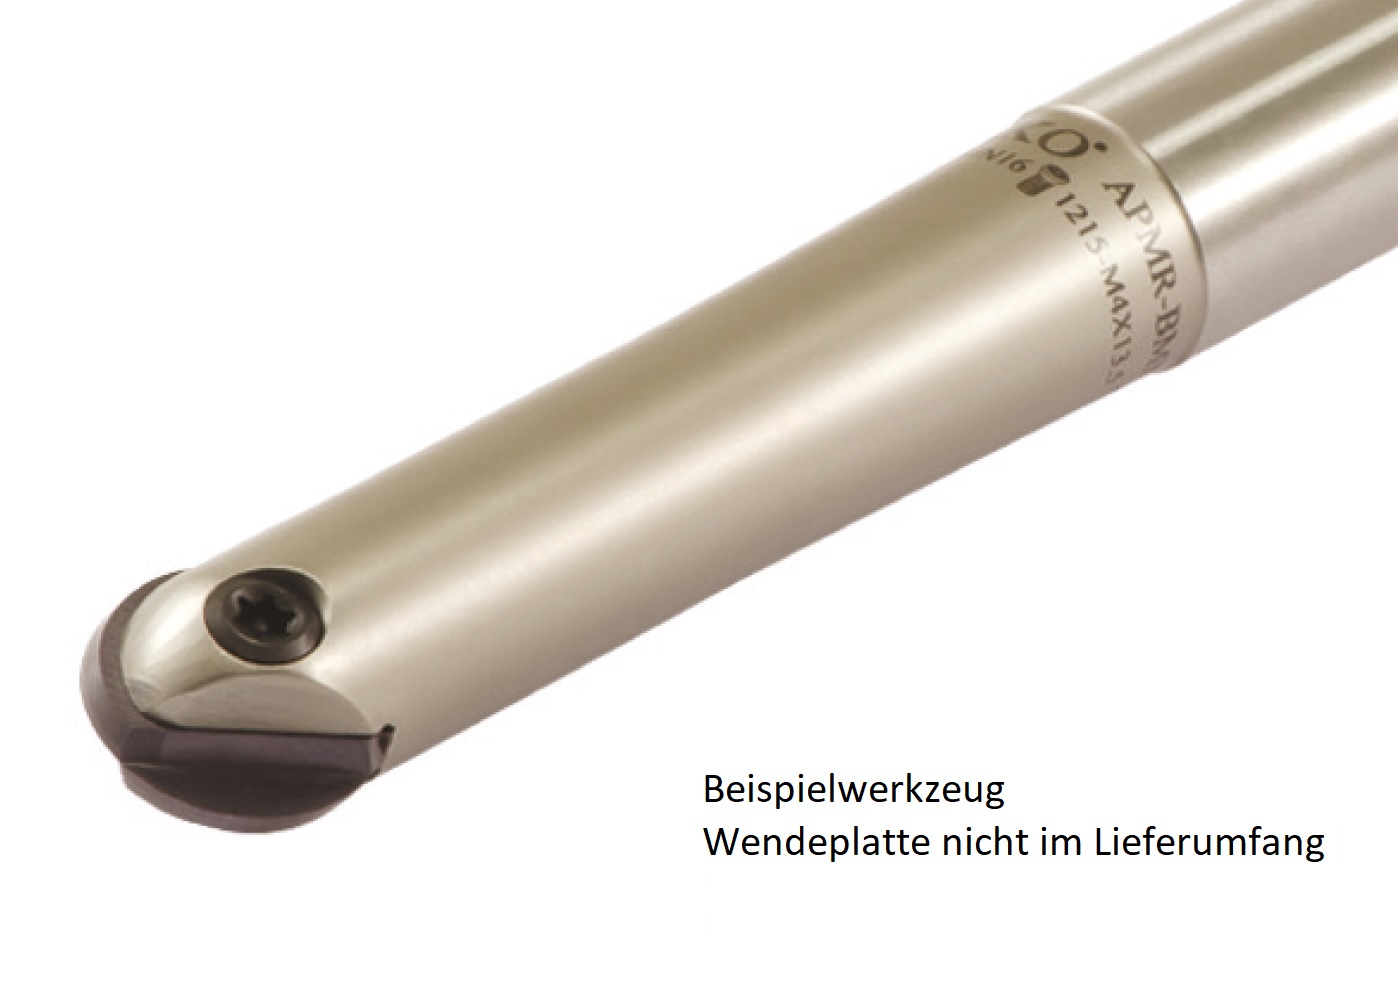 AKKO-Kugelkopierfräser für Wendeplatten ø 20 mm, kompatibel mit Dijet BNM 200-S
Schaft-ø 20, ohne Innenkühlung, Z=2